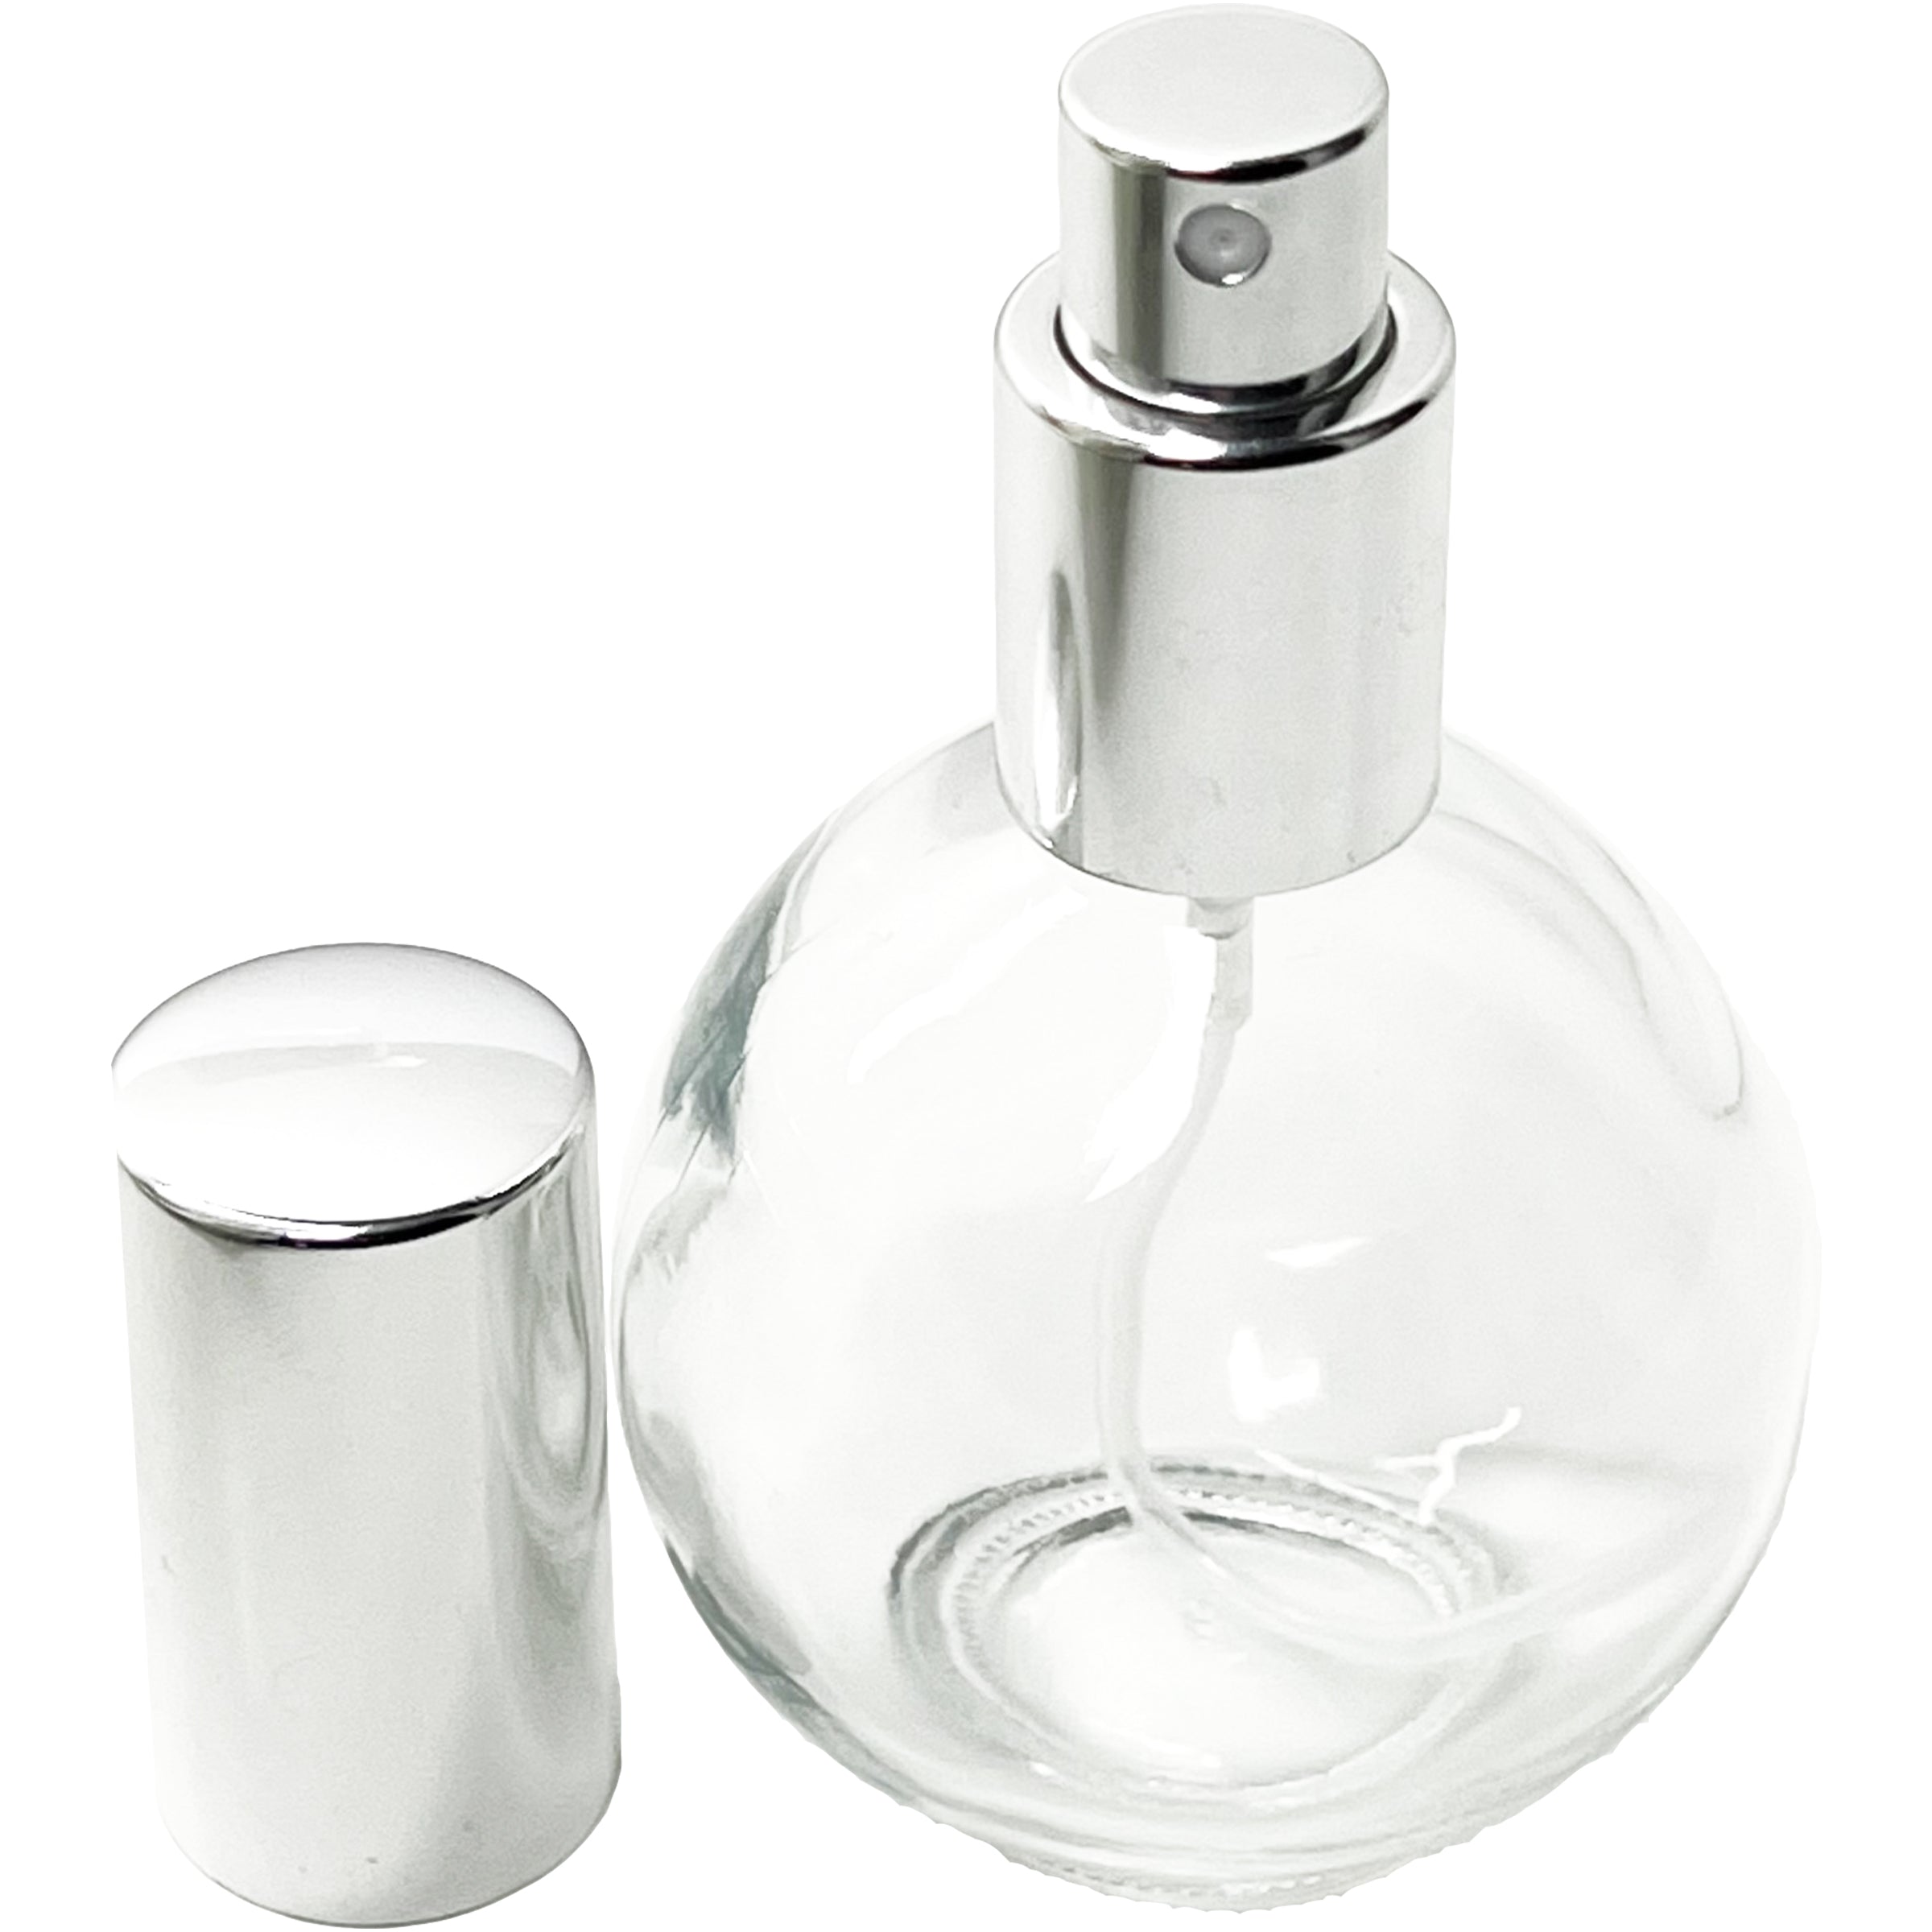 75ml 2.5oz Perfume Sphere Glass Spray Bottles Silver Atomizers